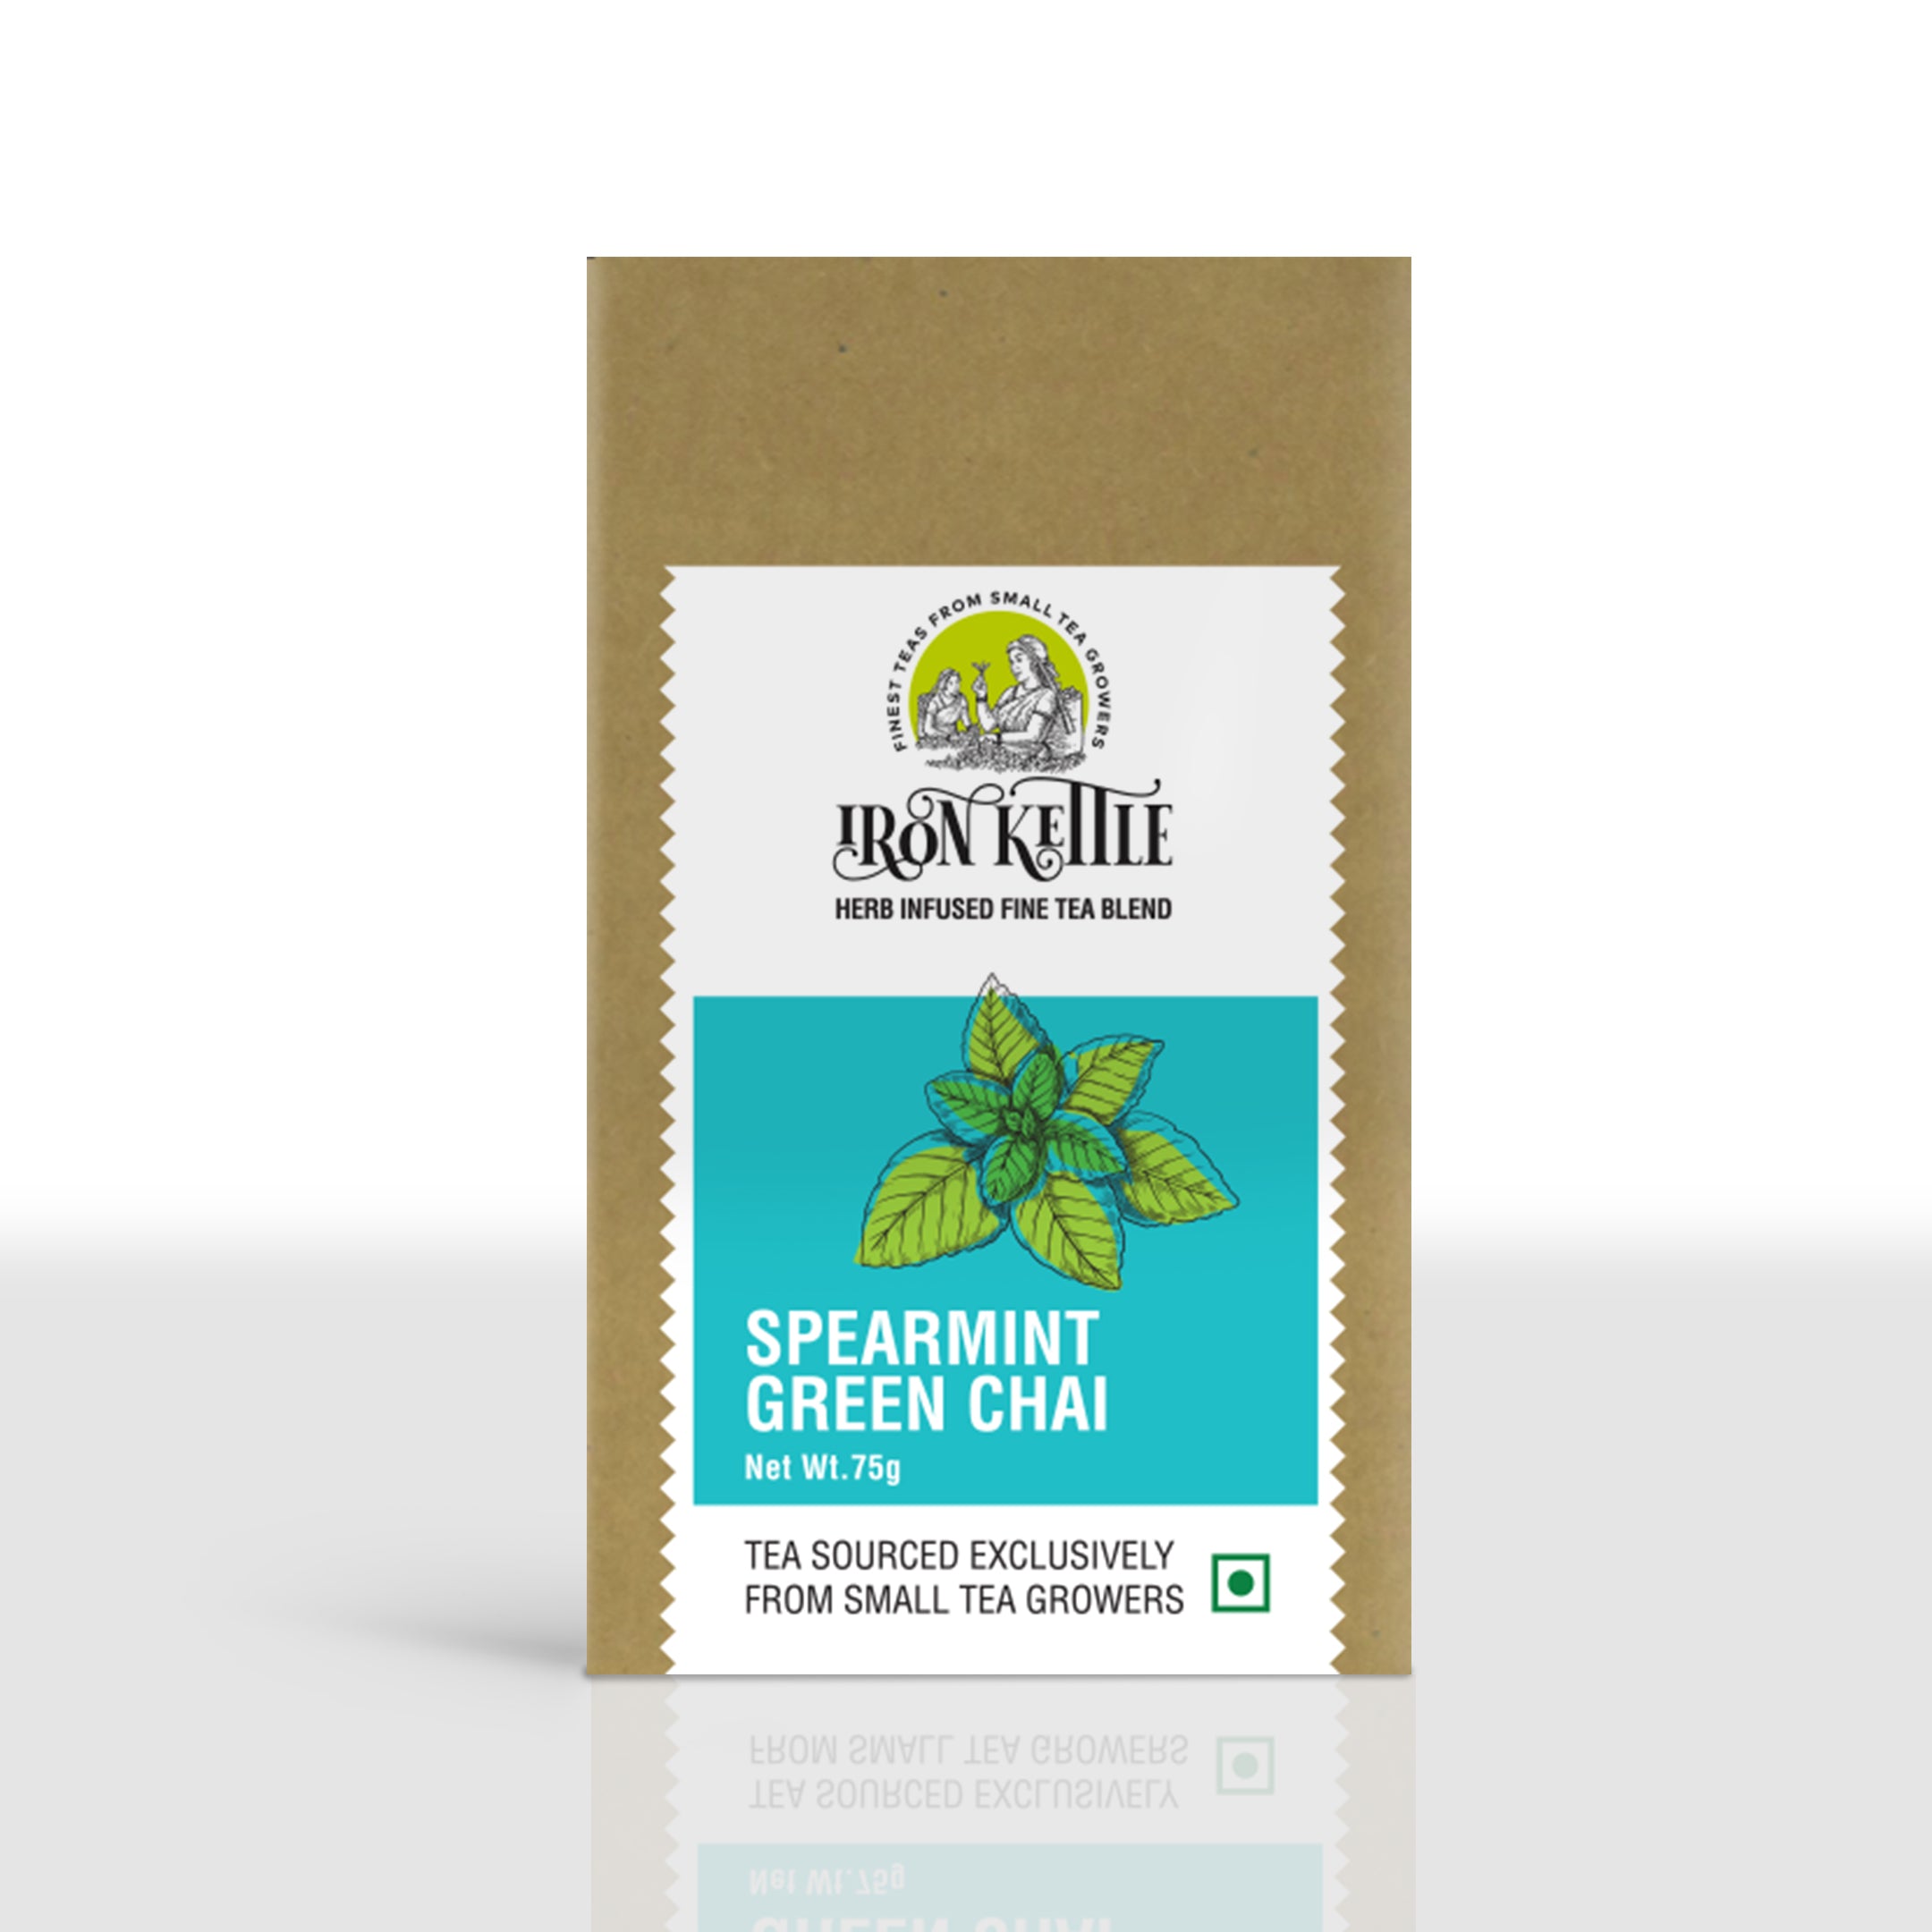 Spearmint Green Chai - Iron Kettle Tea